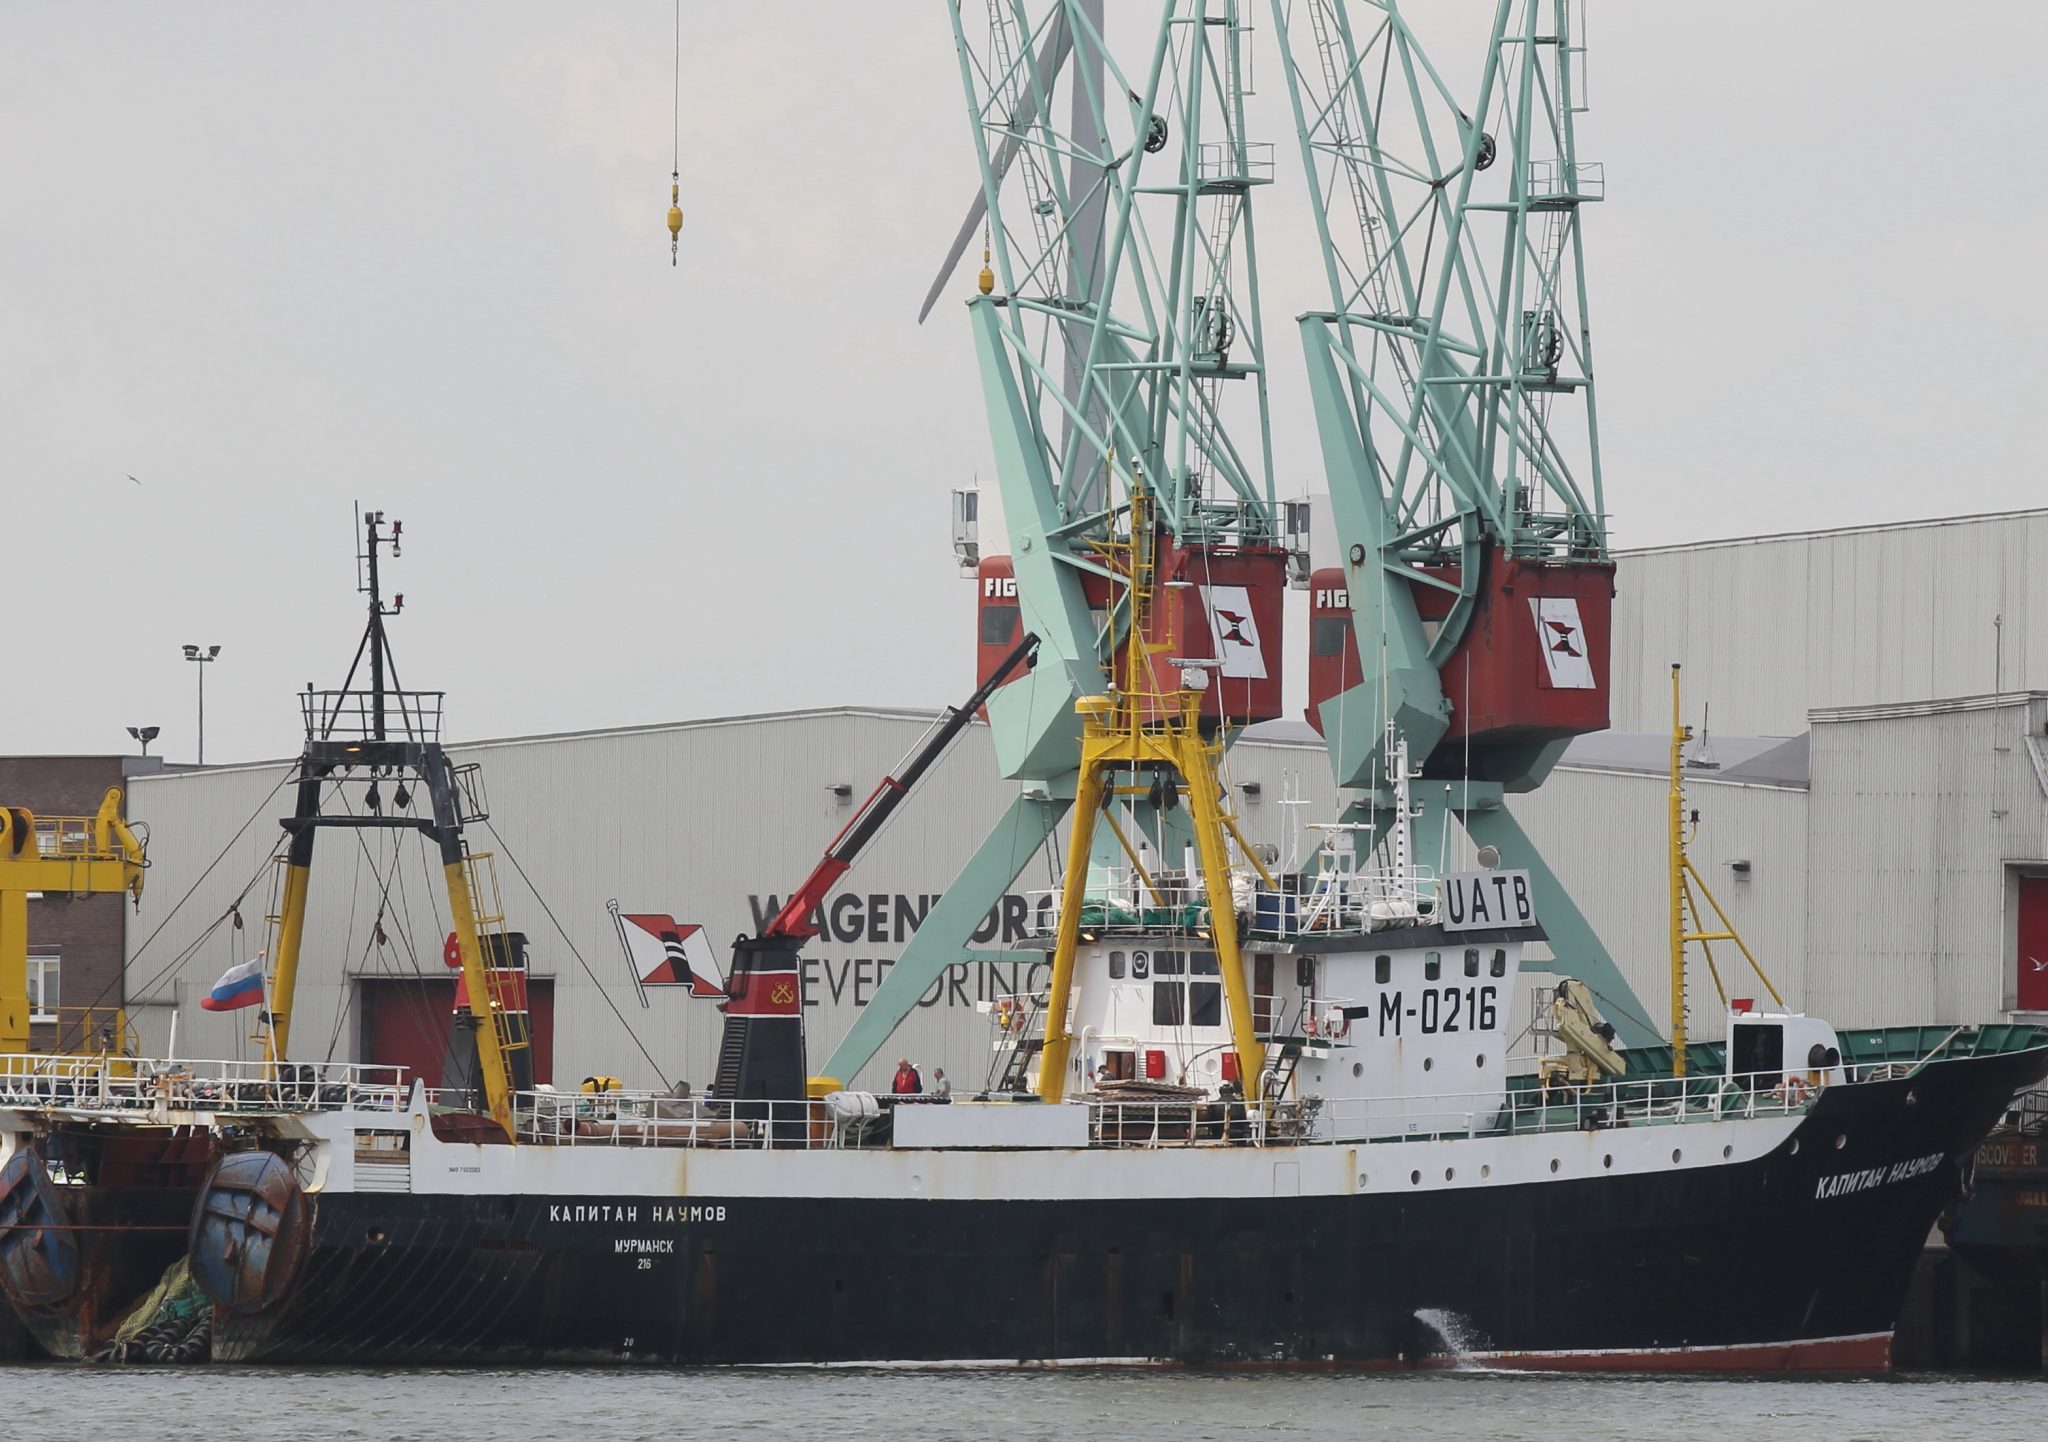 Russische vissersschepen spioneren in de Eemshaven